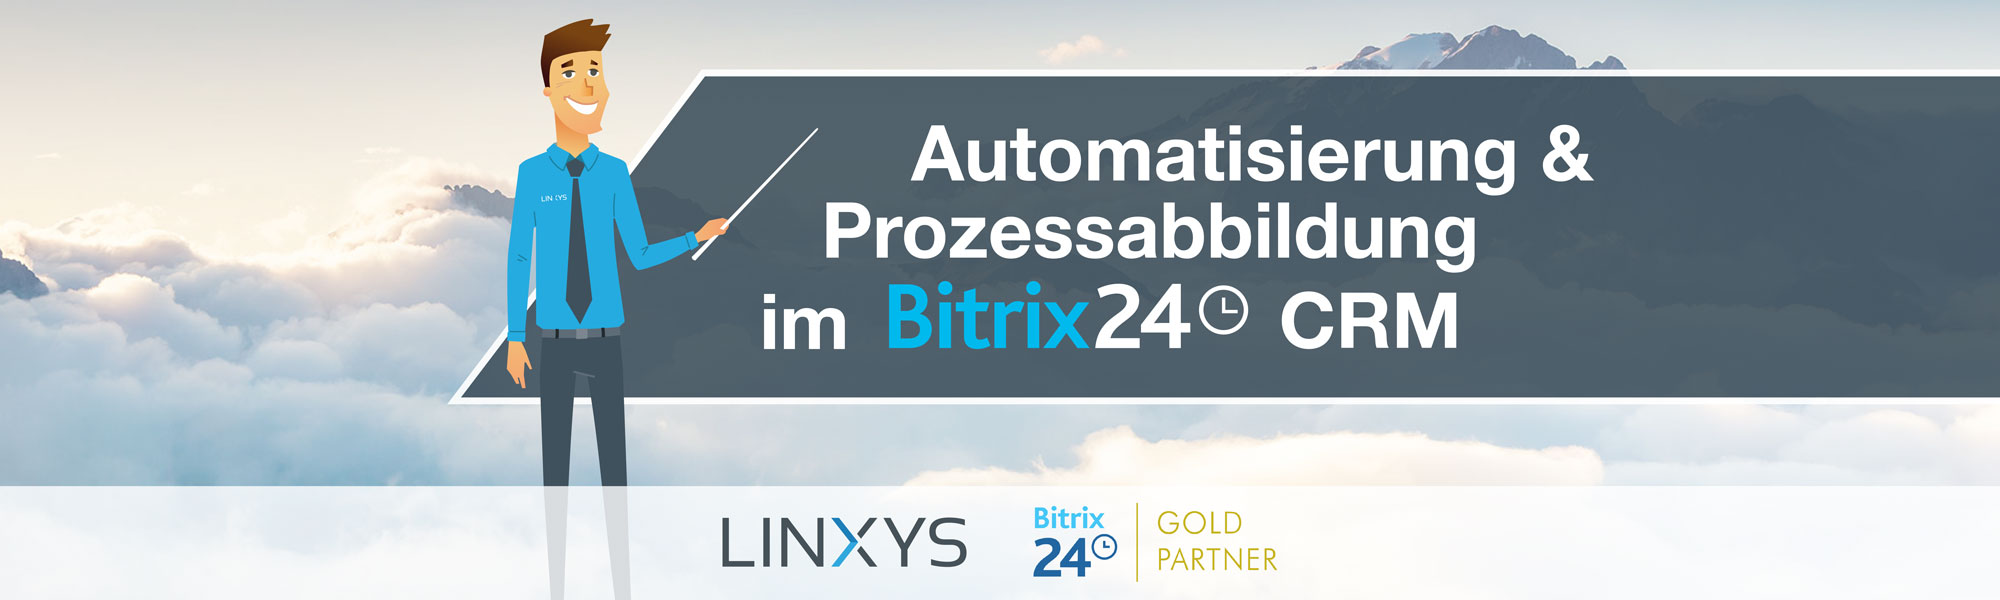 Automatisierung & Prozessabbildung im Bitrix24 CRM